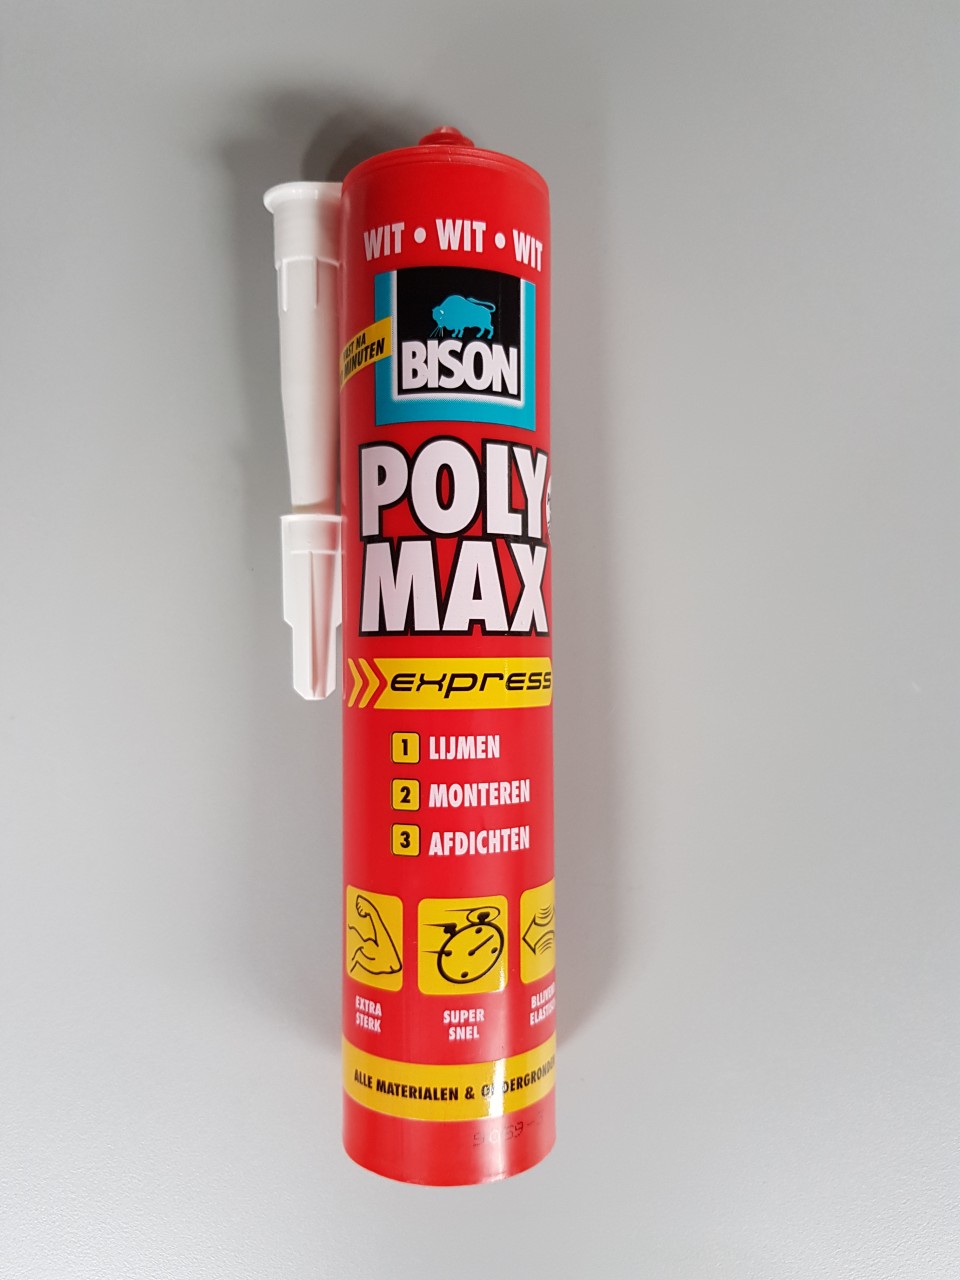 Bison polymax express wit Bison polymax express wit